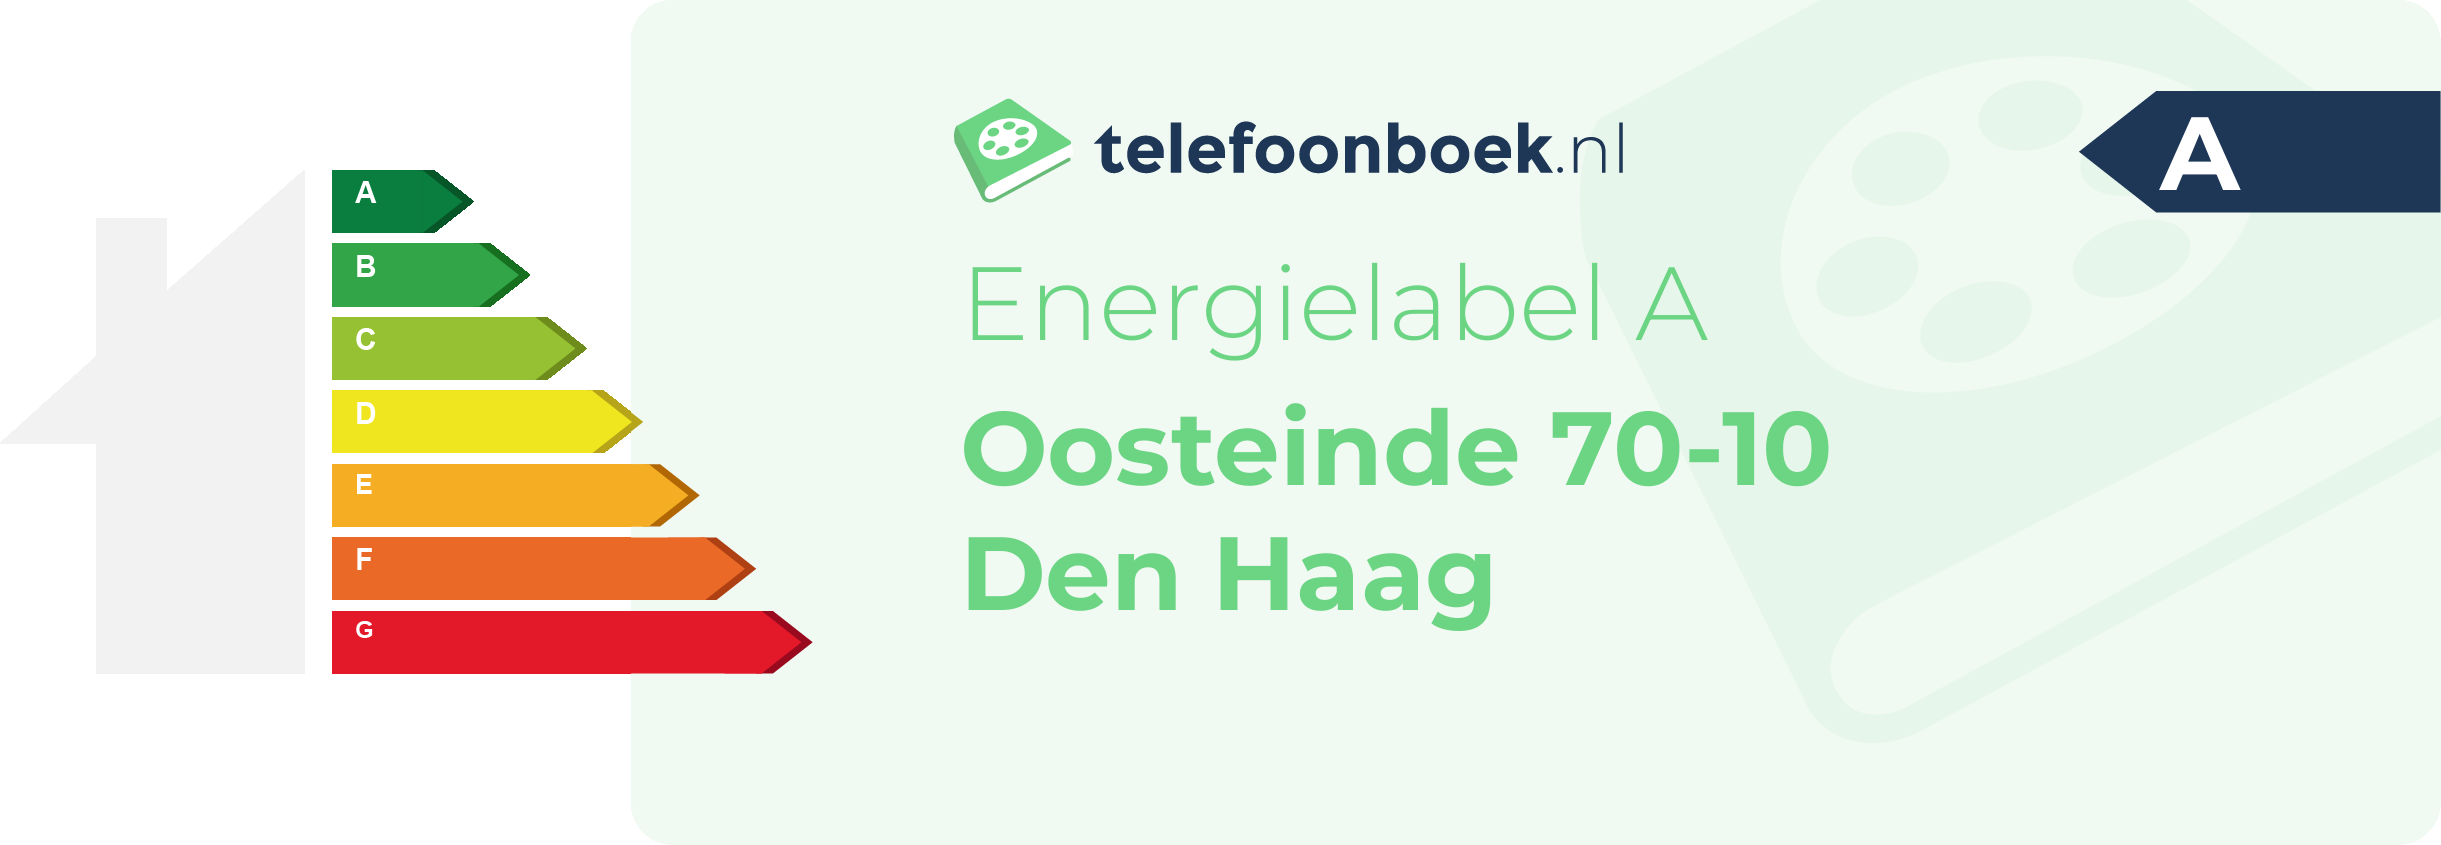 Energielabel Oosteinde 70-10 Den Haag